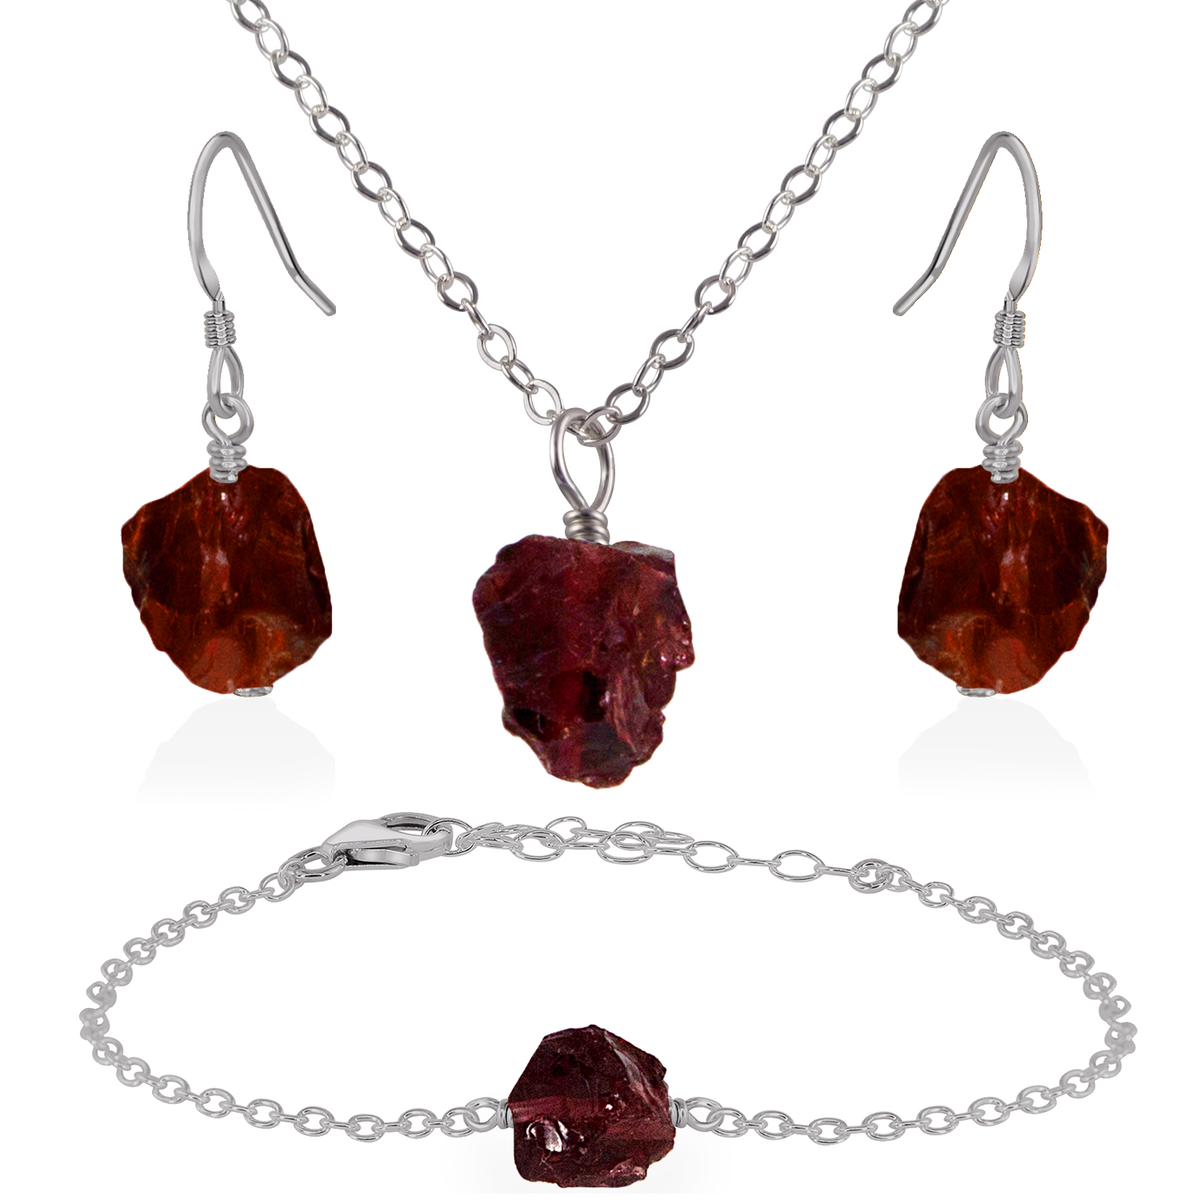 Raw Garnet Crystal Jewellery Set - Raw Garnet Crystal Jewellery Set - Stainless Steel / Cable / Necklace & Earrings & Bracelet - Luna Tide Handmade Crystal Jewellery